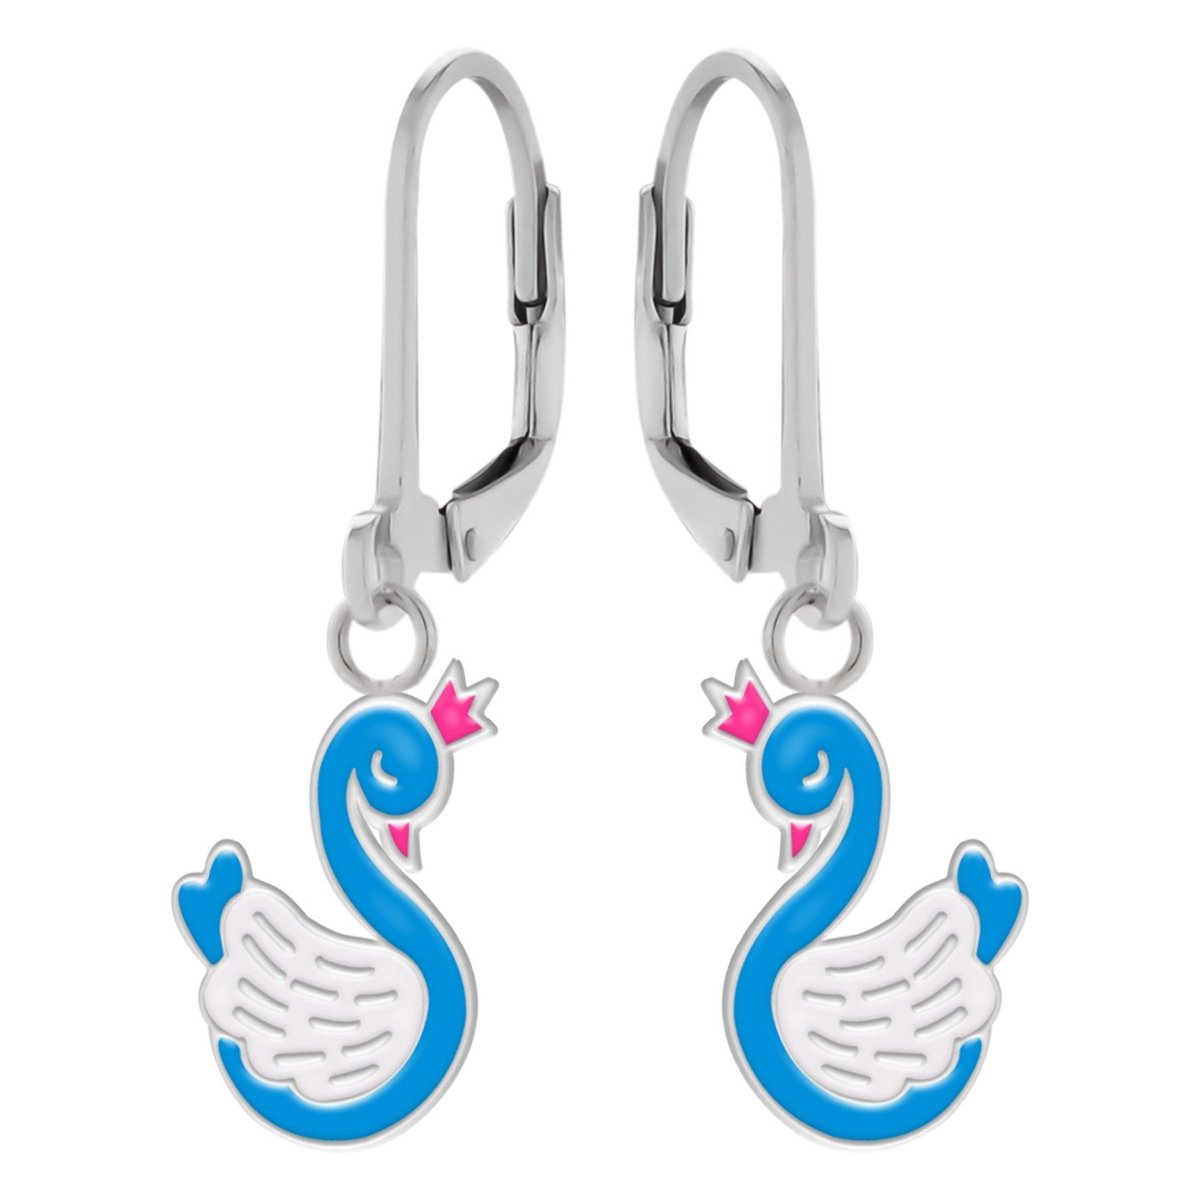 Oorbellen meisje | Zilveren kinderoorbellen | Zilveren oorhangers, blauwe zwaan met roze kroontje